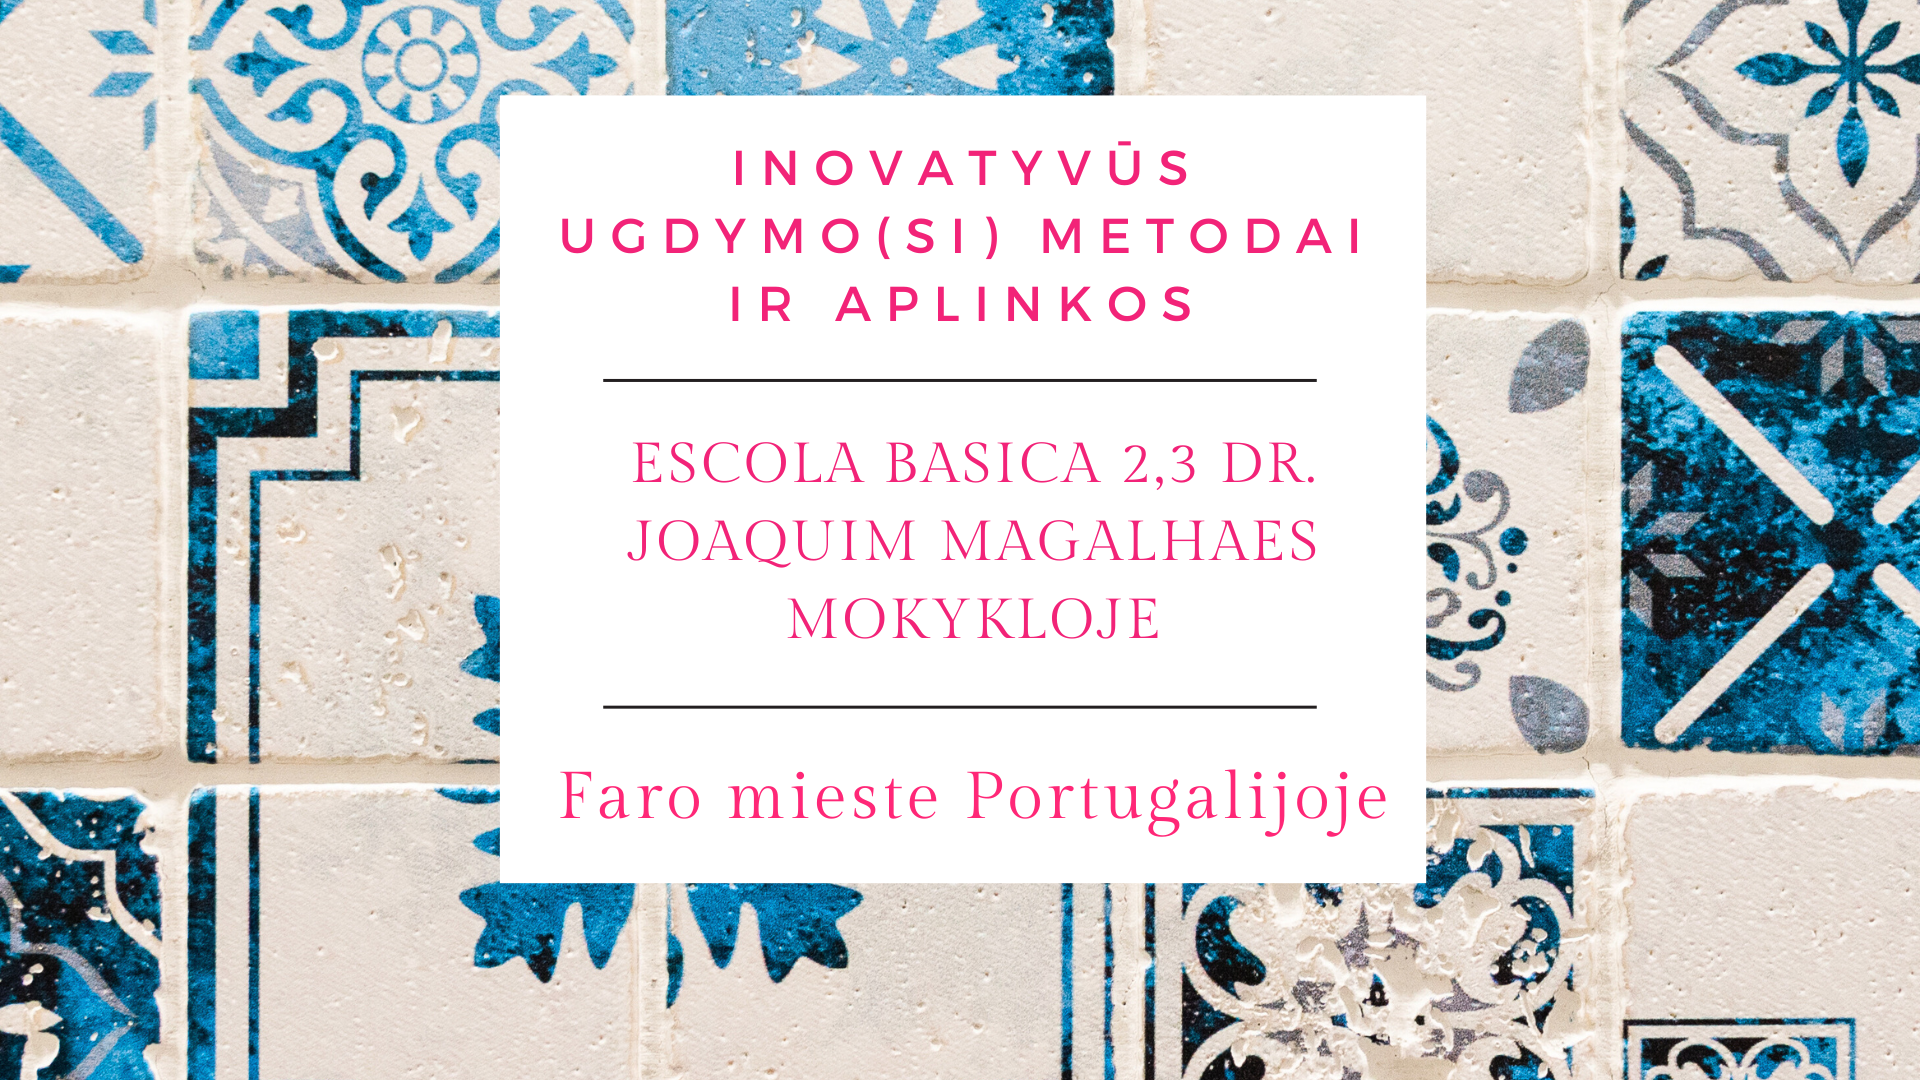 Inovatyvūs ugdymo(si) metodai ir aplinkos Escola Basica 2,3 Dr. Joaquim Magalhaes mokykloje Faro mieste Portugalijoje